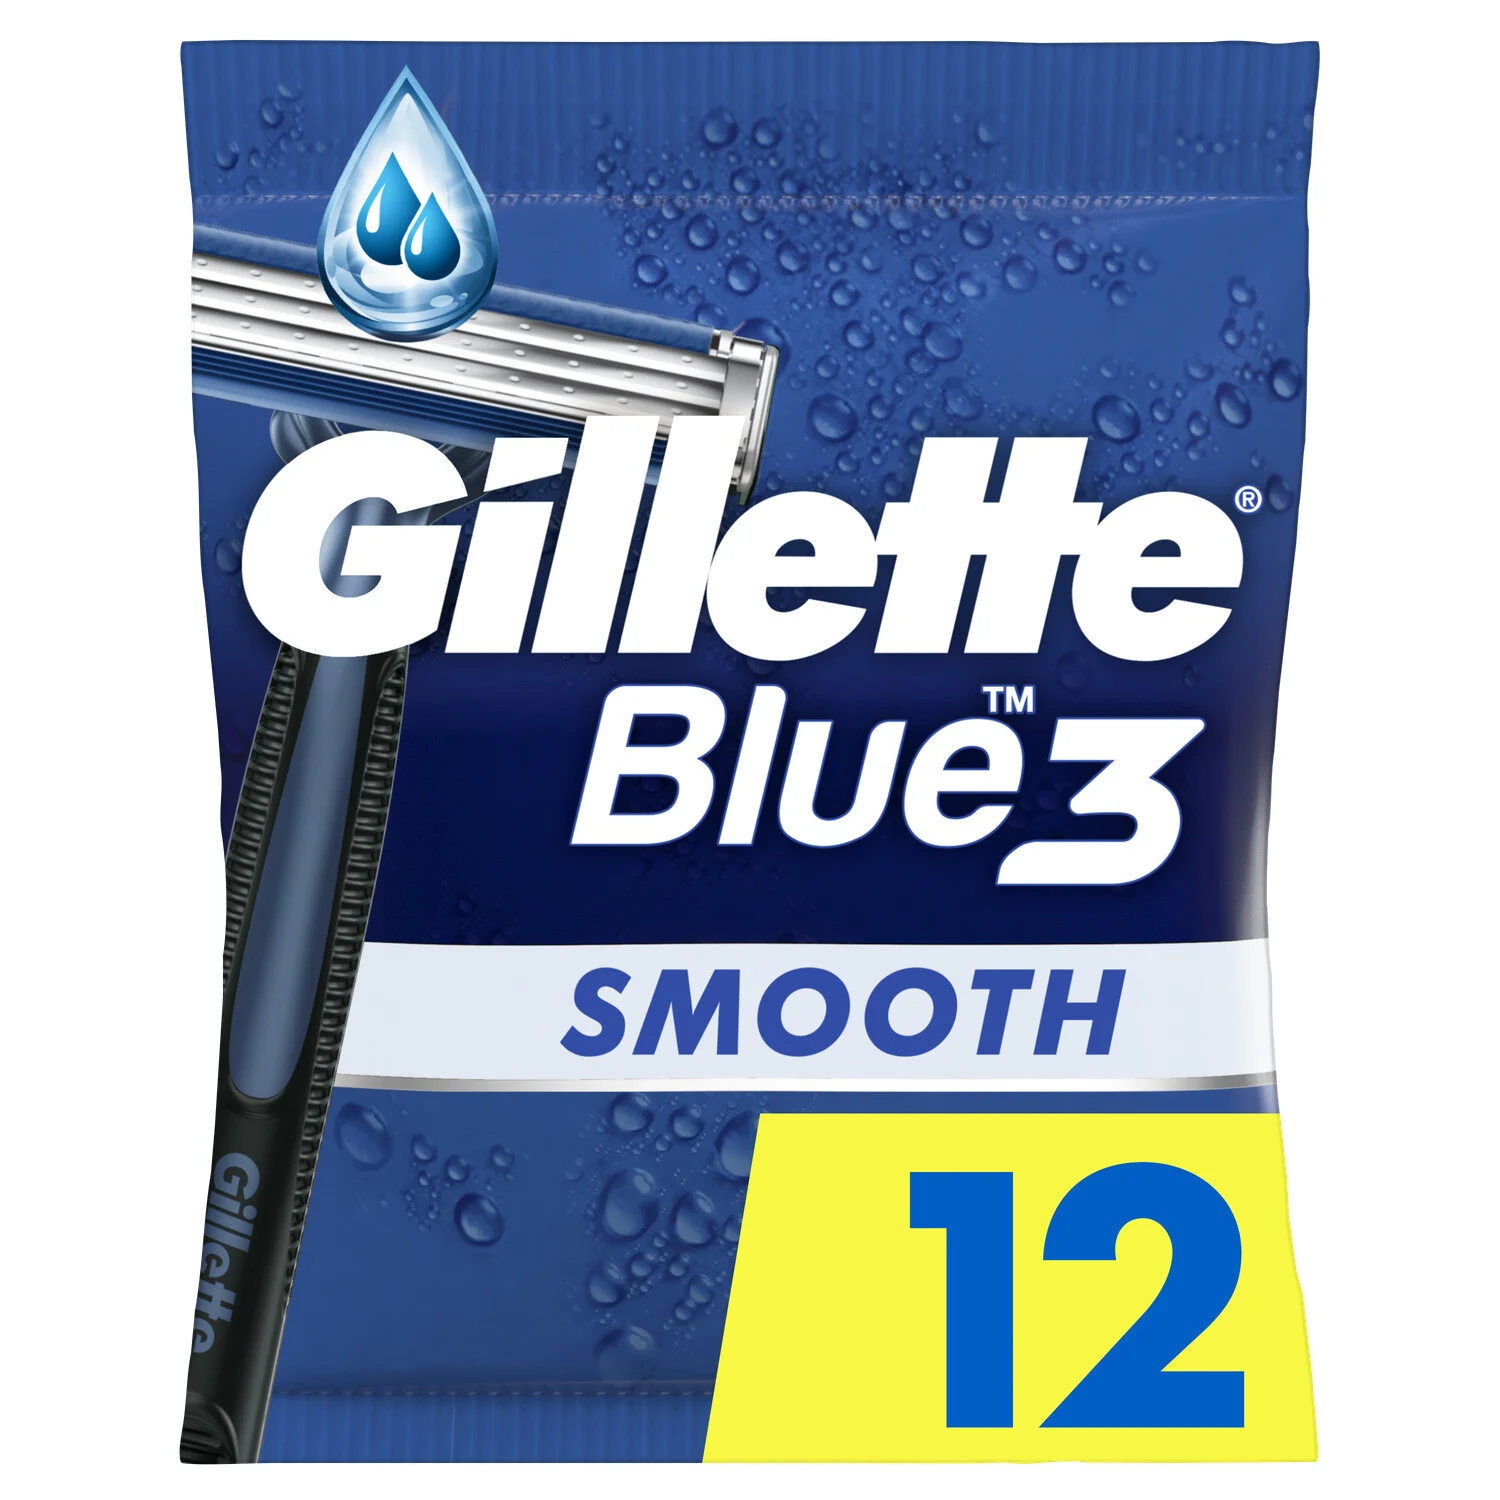 Gillette 3x4 Jet Smooth Blue3